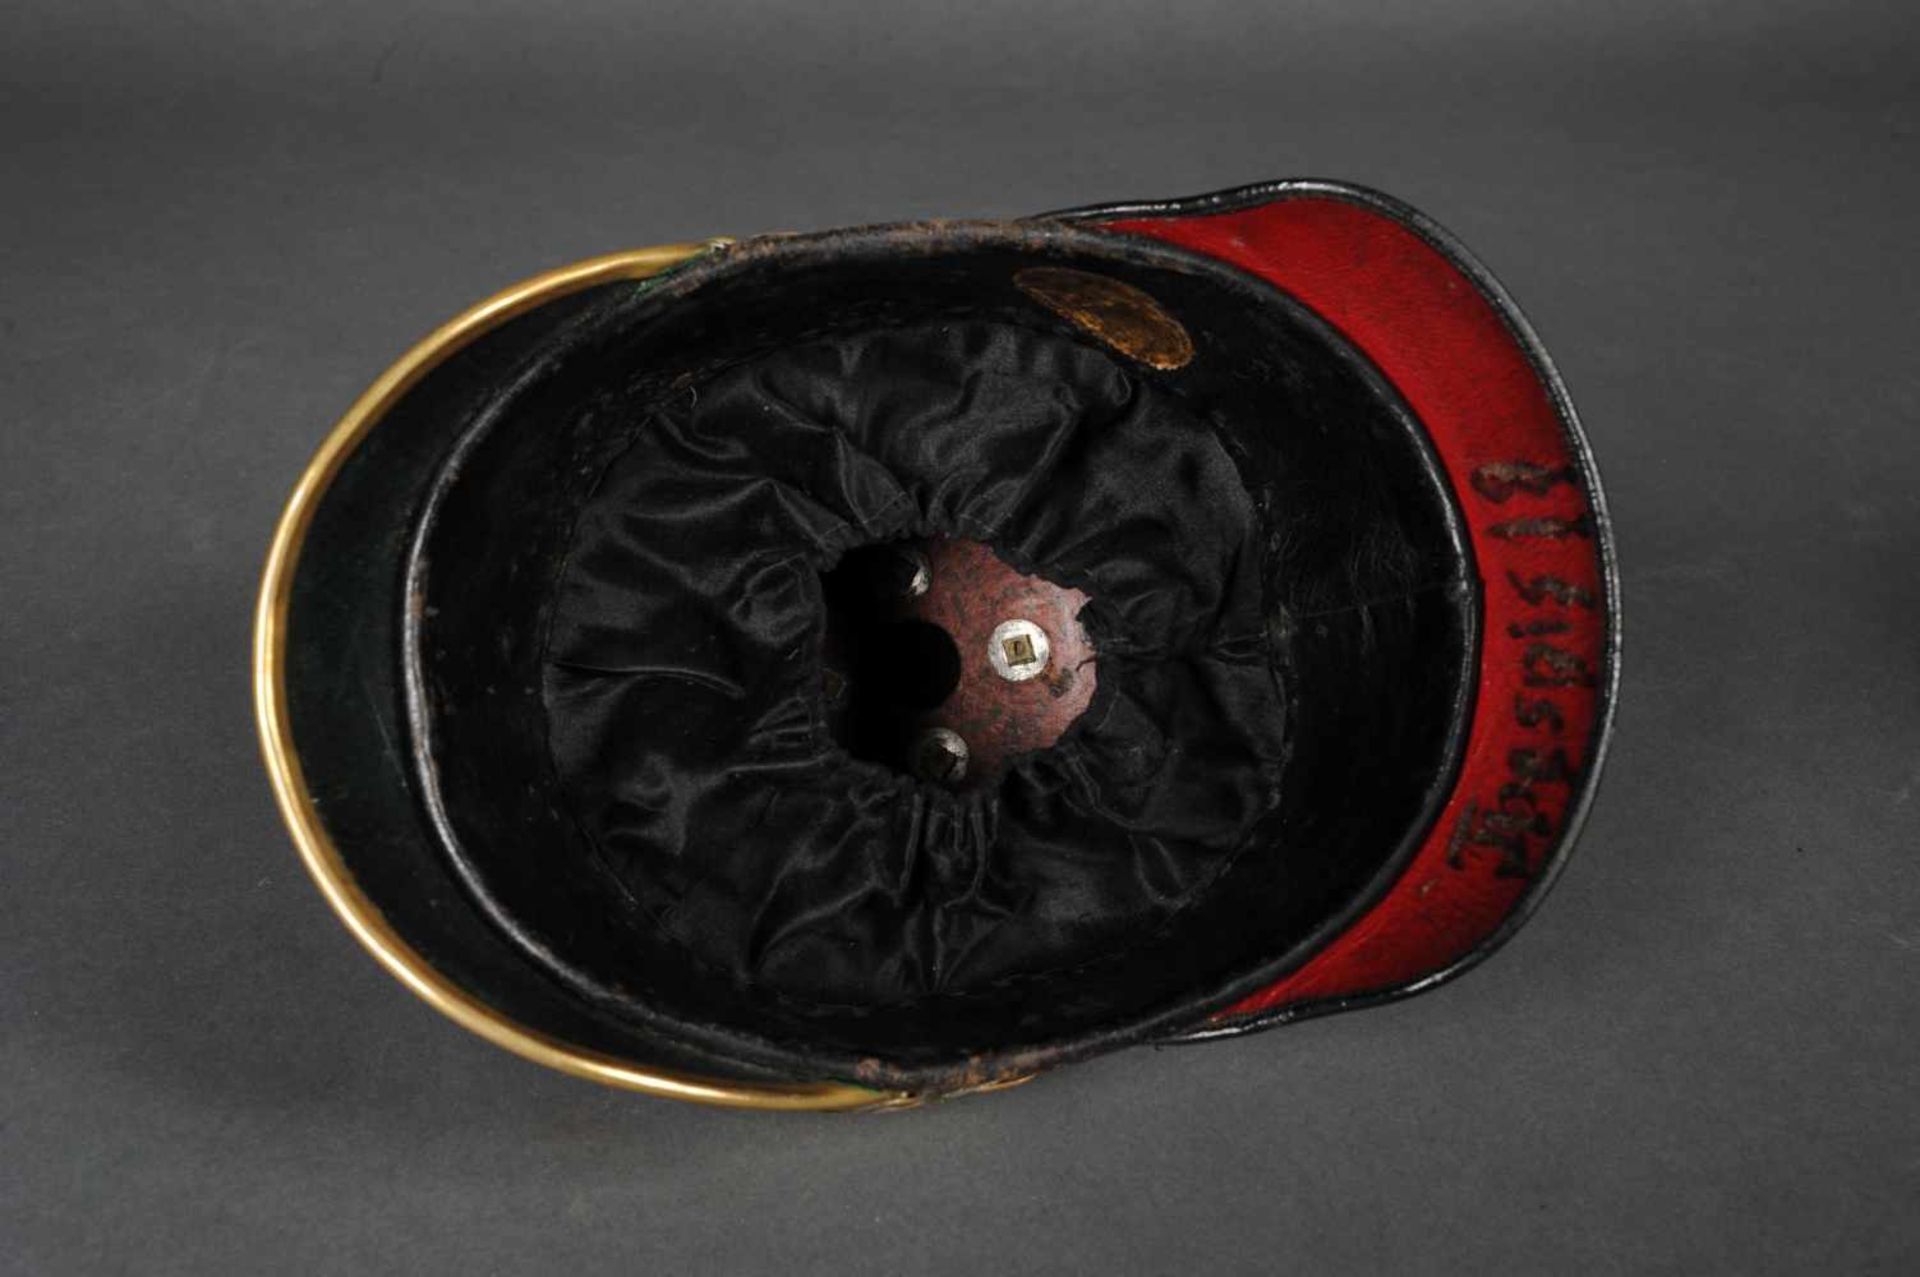 Saxe. Casque d’officier Mod 1867, belle bombe, complet de ses jugulaires à écailles et de sa - Image 4 of 4